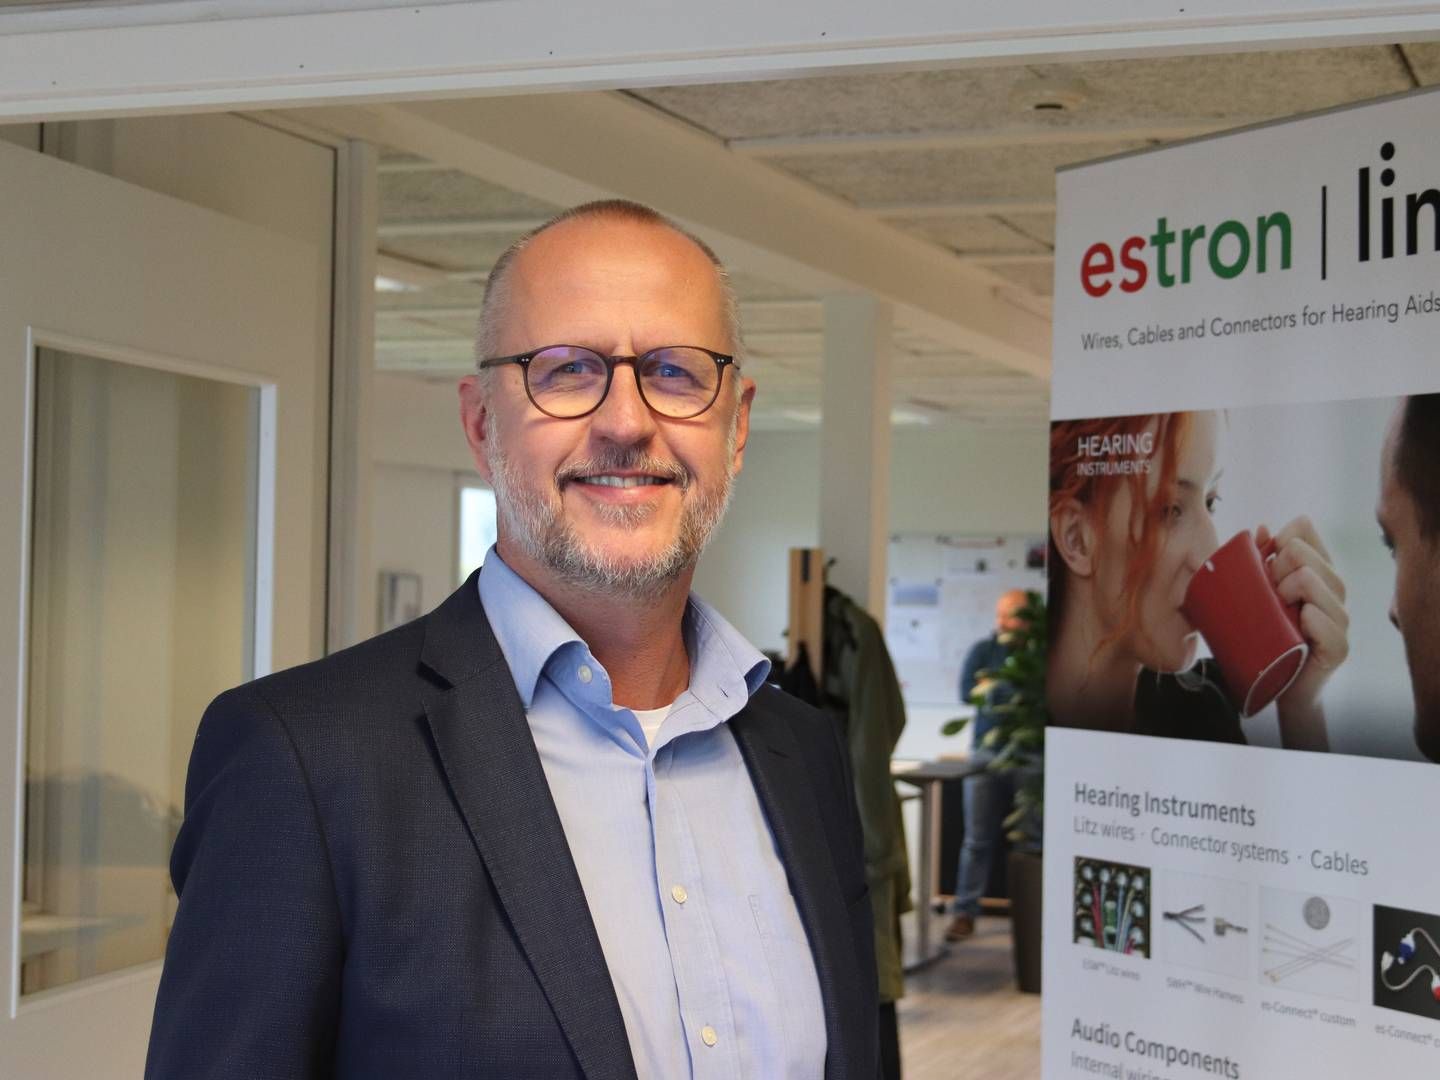 Peter Lyhne Uhrenholt, CEO, Estron